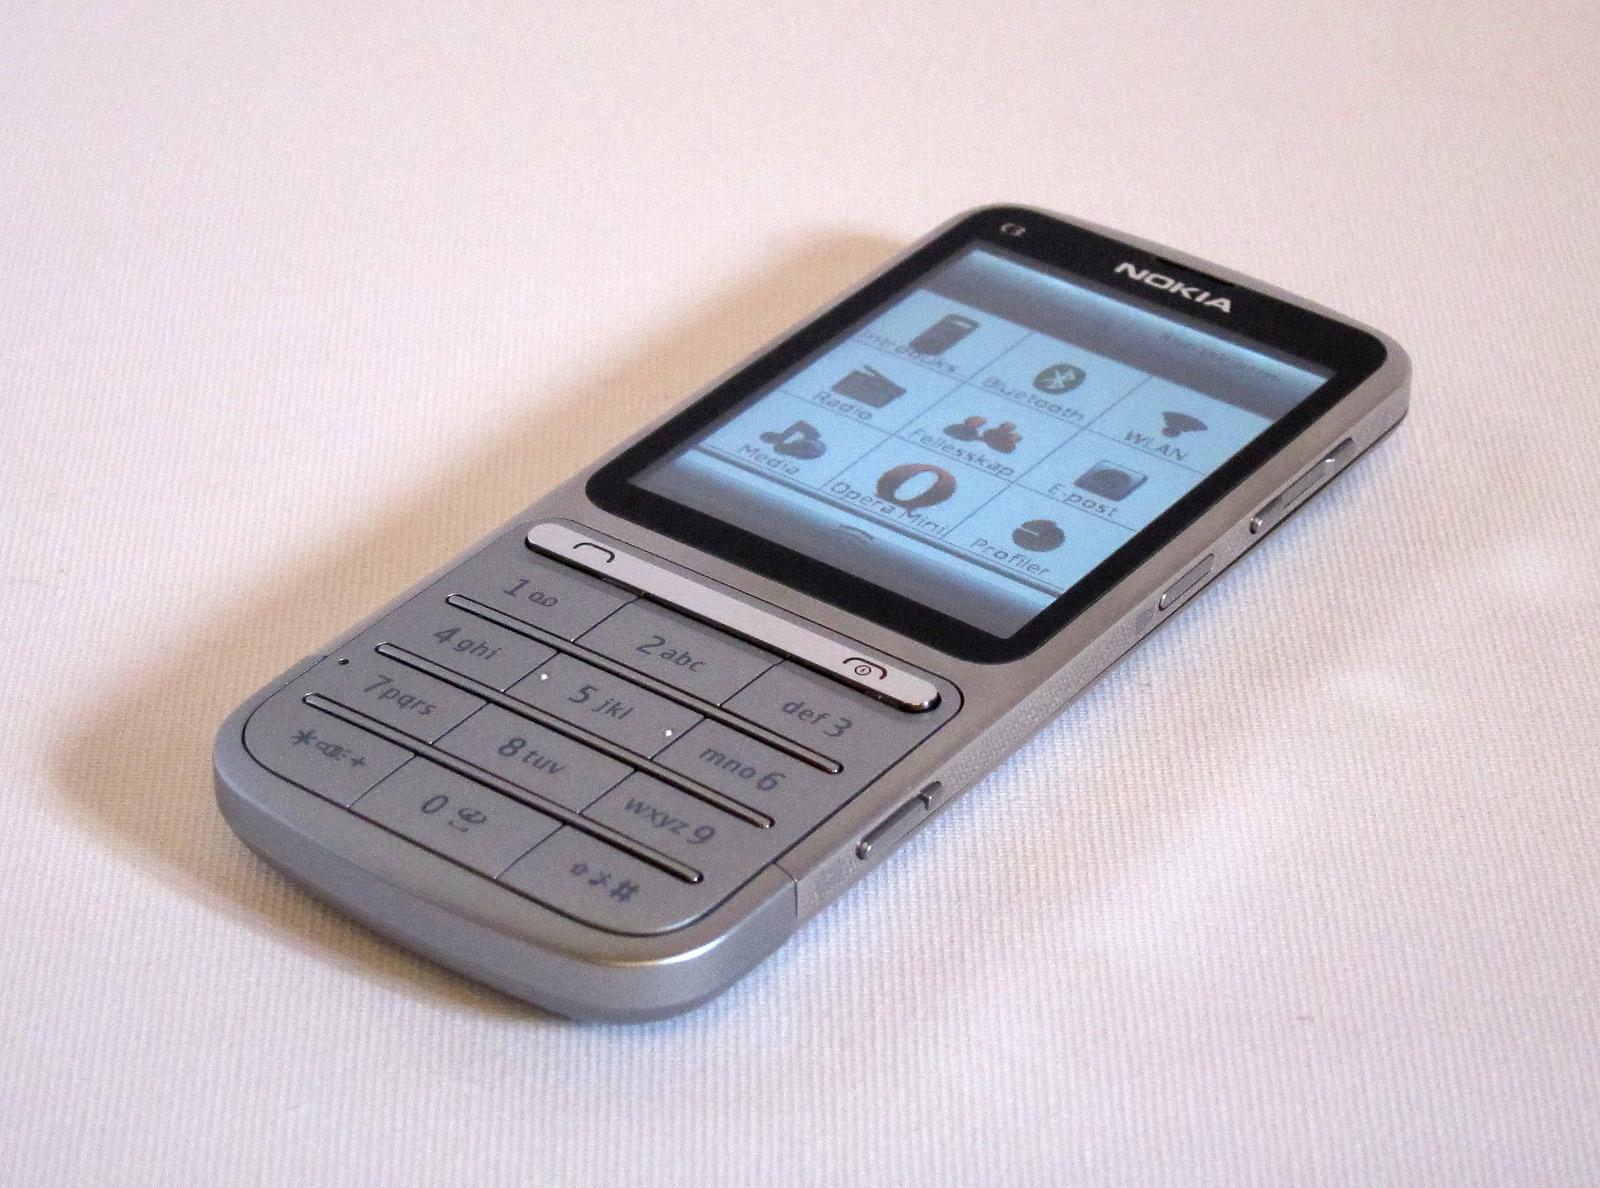 Nokia C3-01 ser ut som en tradisjonell mobiltelefon.